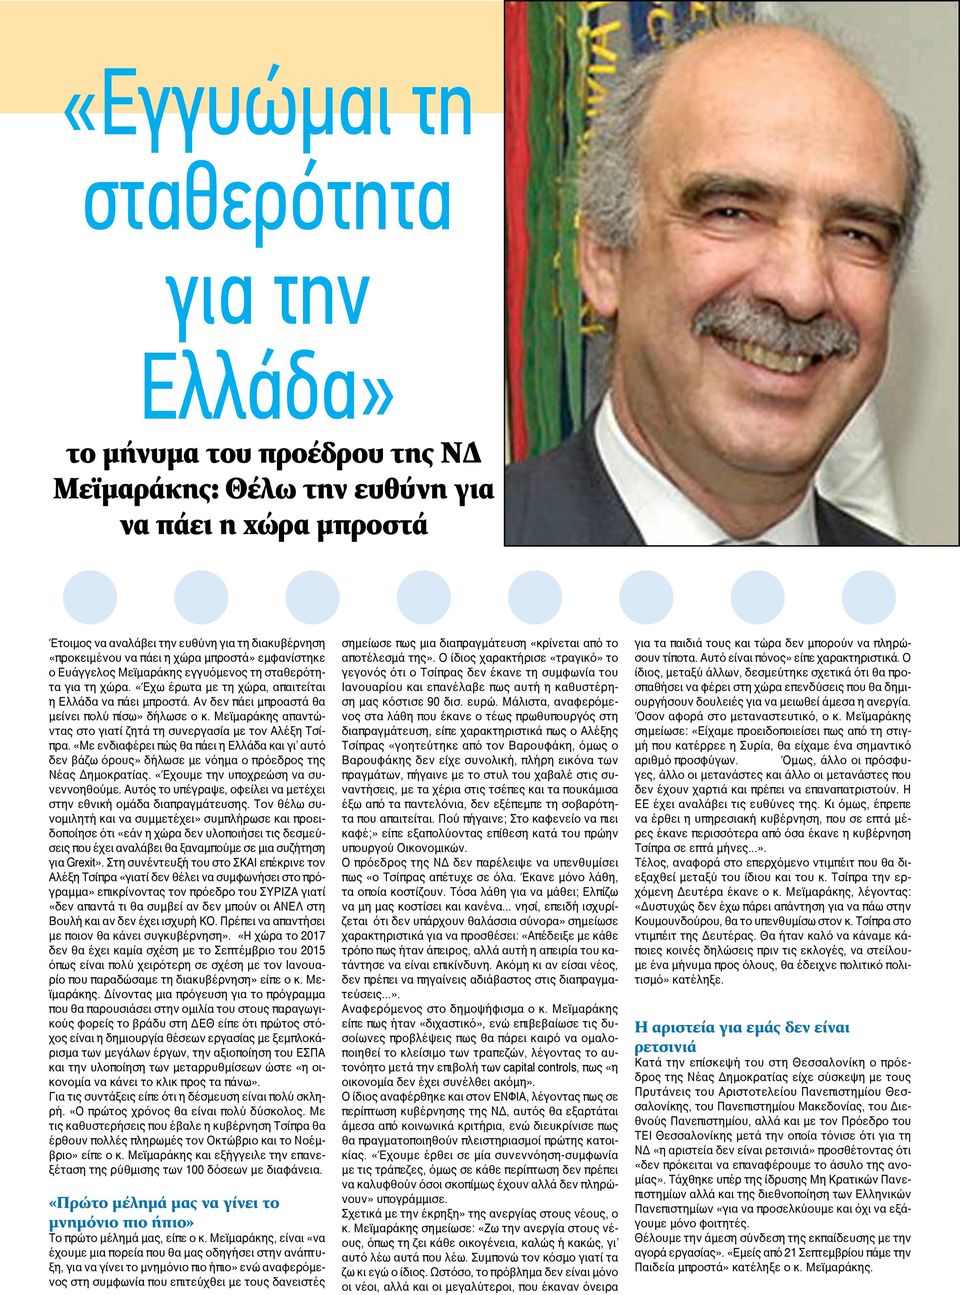 Αν δεν πάει μπροαστά θα μείνει πολύ πίσω» δήλωσε ο κ. Μεϊμαράκης απαντώντας στο γιατί ζητά τη συνεργασία με τον Αλέξη Τσίπρα.